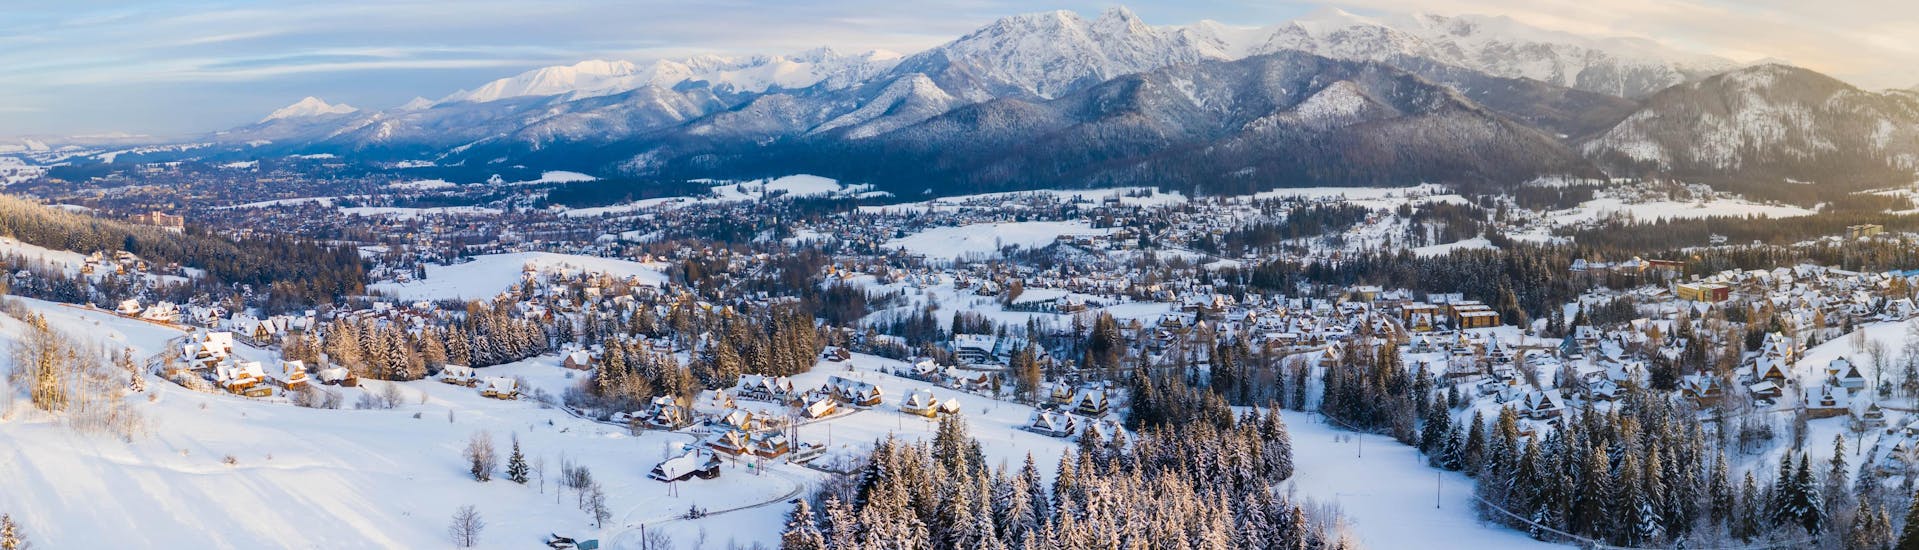 Blick auf die verschneite Landschaft des Dorfes Zakopane, wo die örtlichen Skischulen ihre Skikurse anbieten.